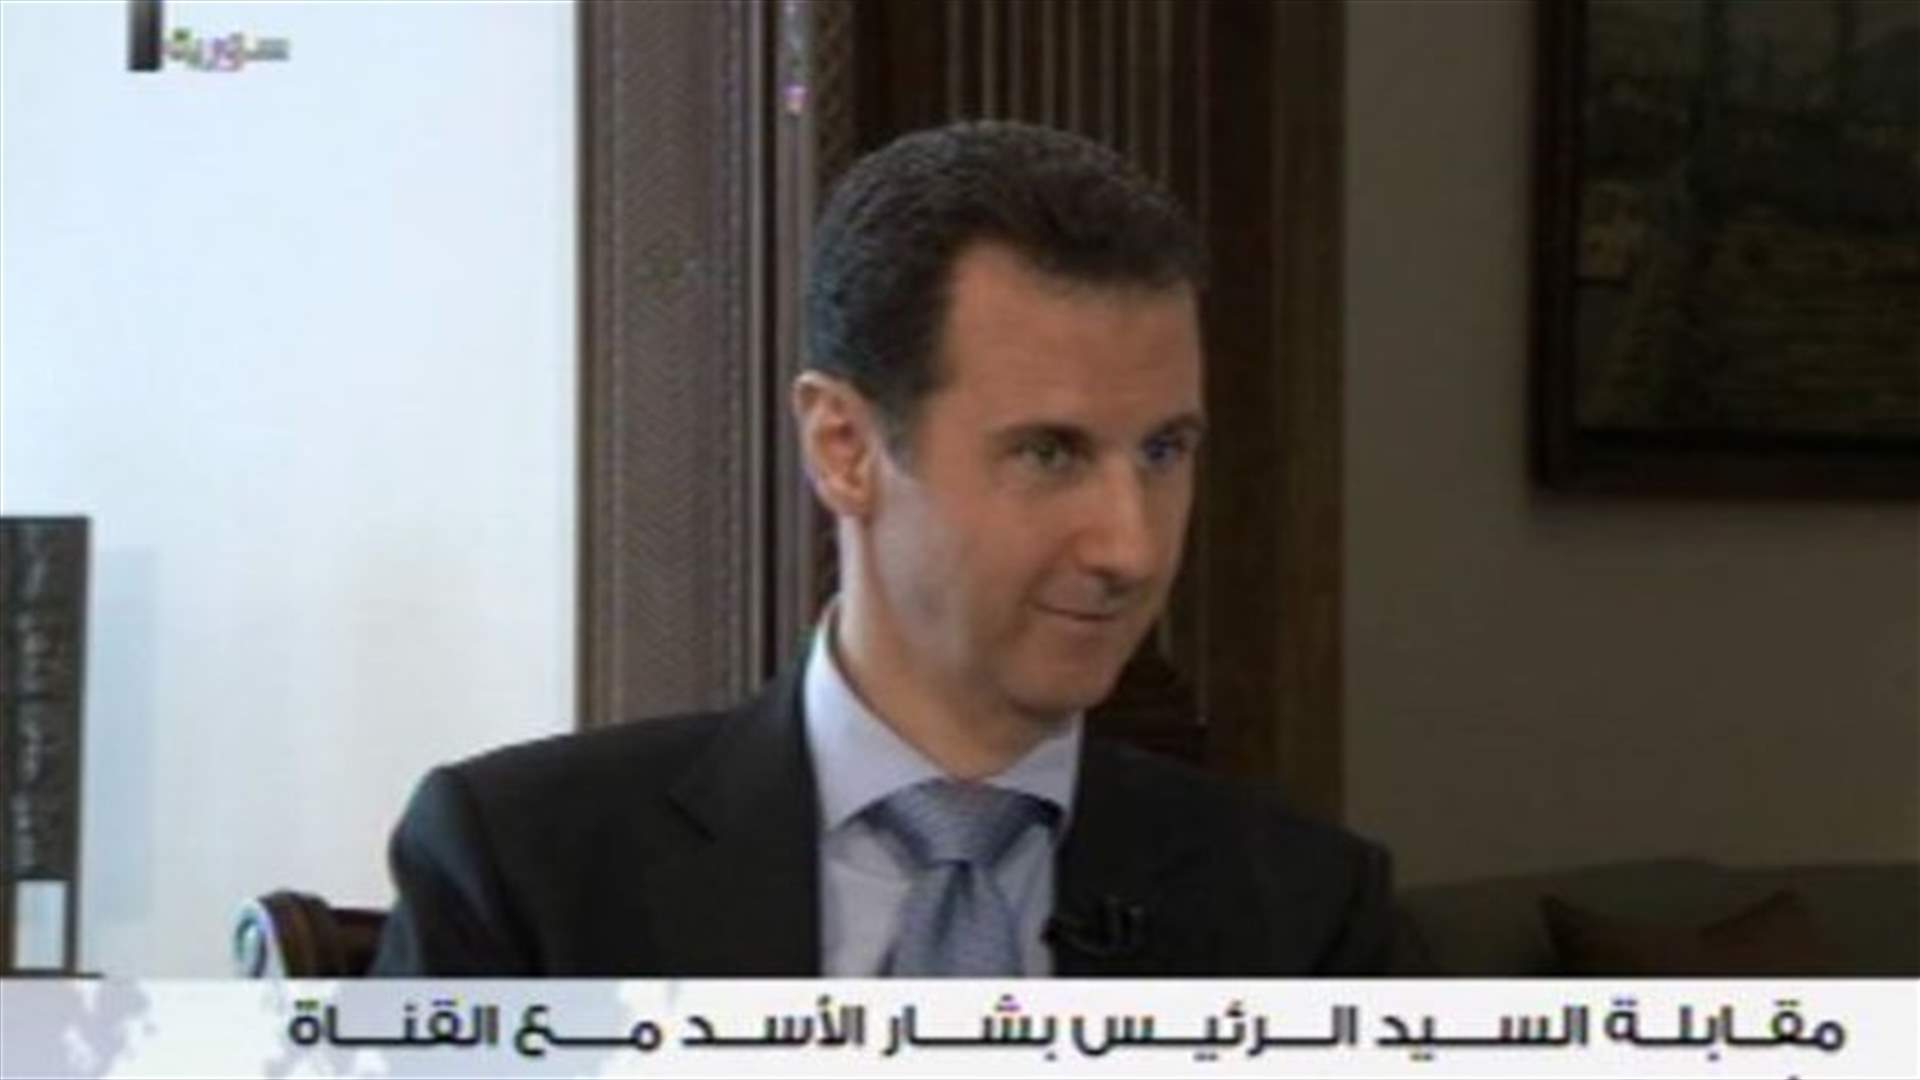 الأسد: اتصالات بين الاستخبارات الفرنسية والسورية بطلب من باريس